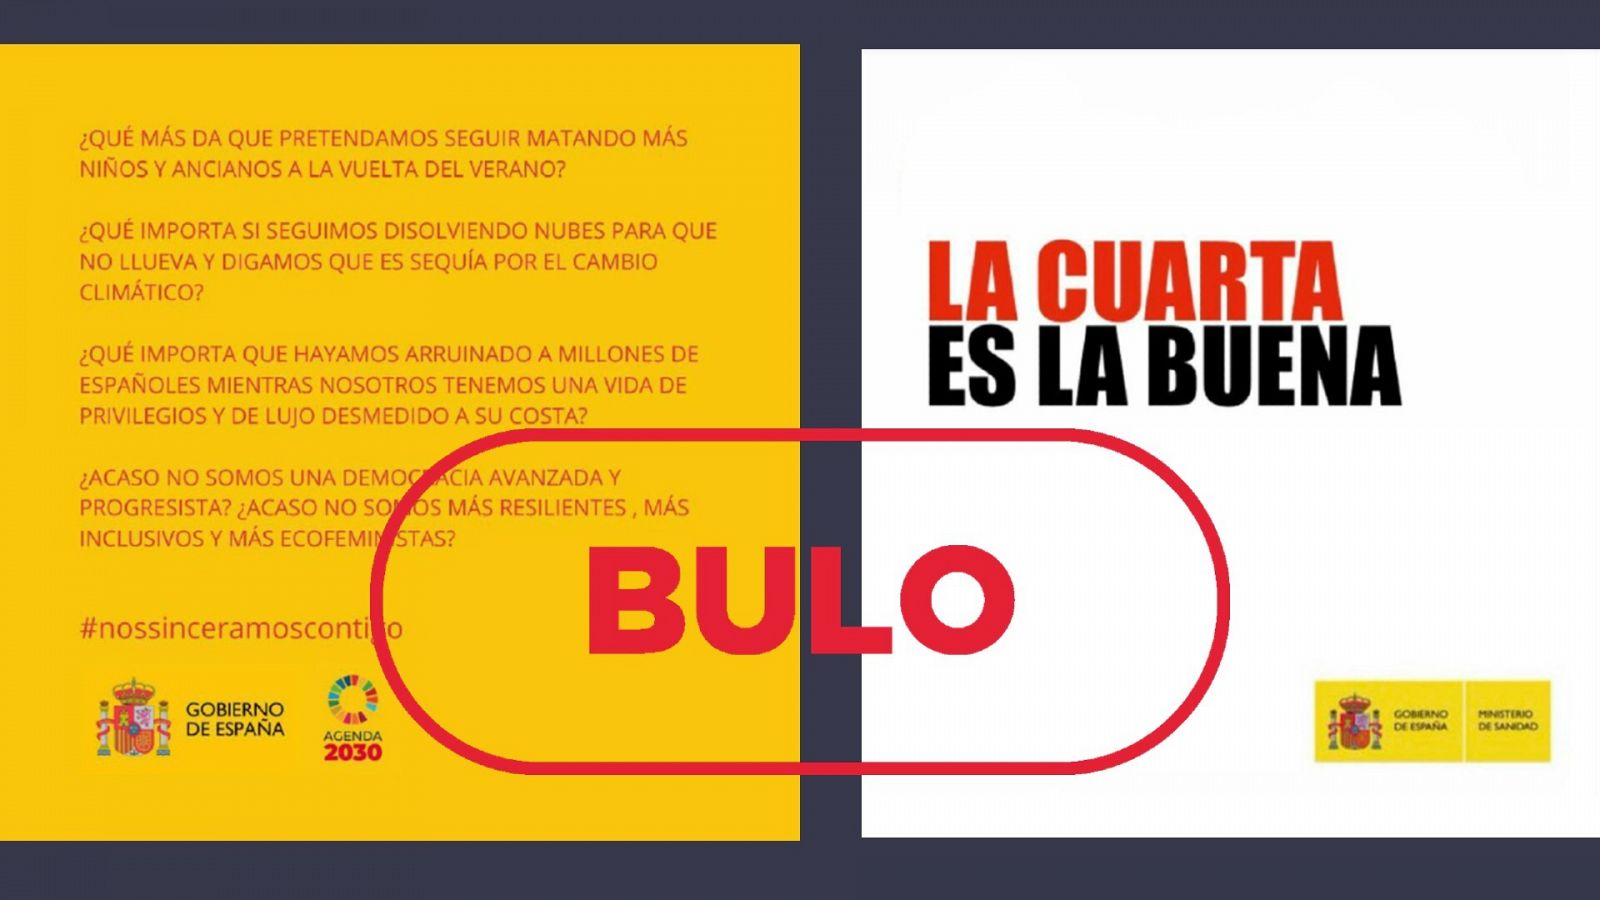 Carteles que se difunden en Telegram suplantando a campañas oficiales del Gobierno de España, con el sello 'Bulo' en rojo